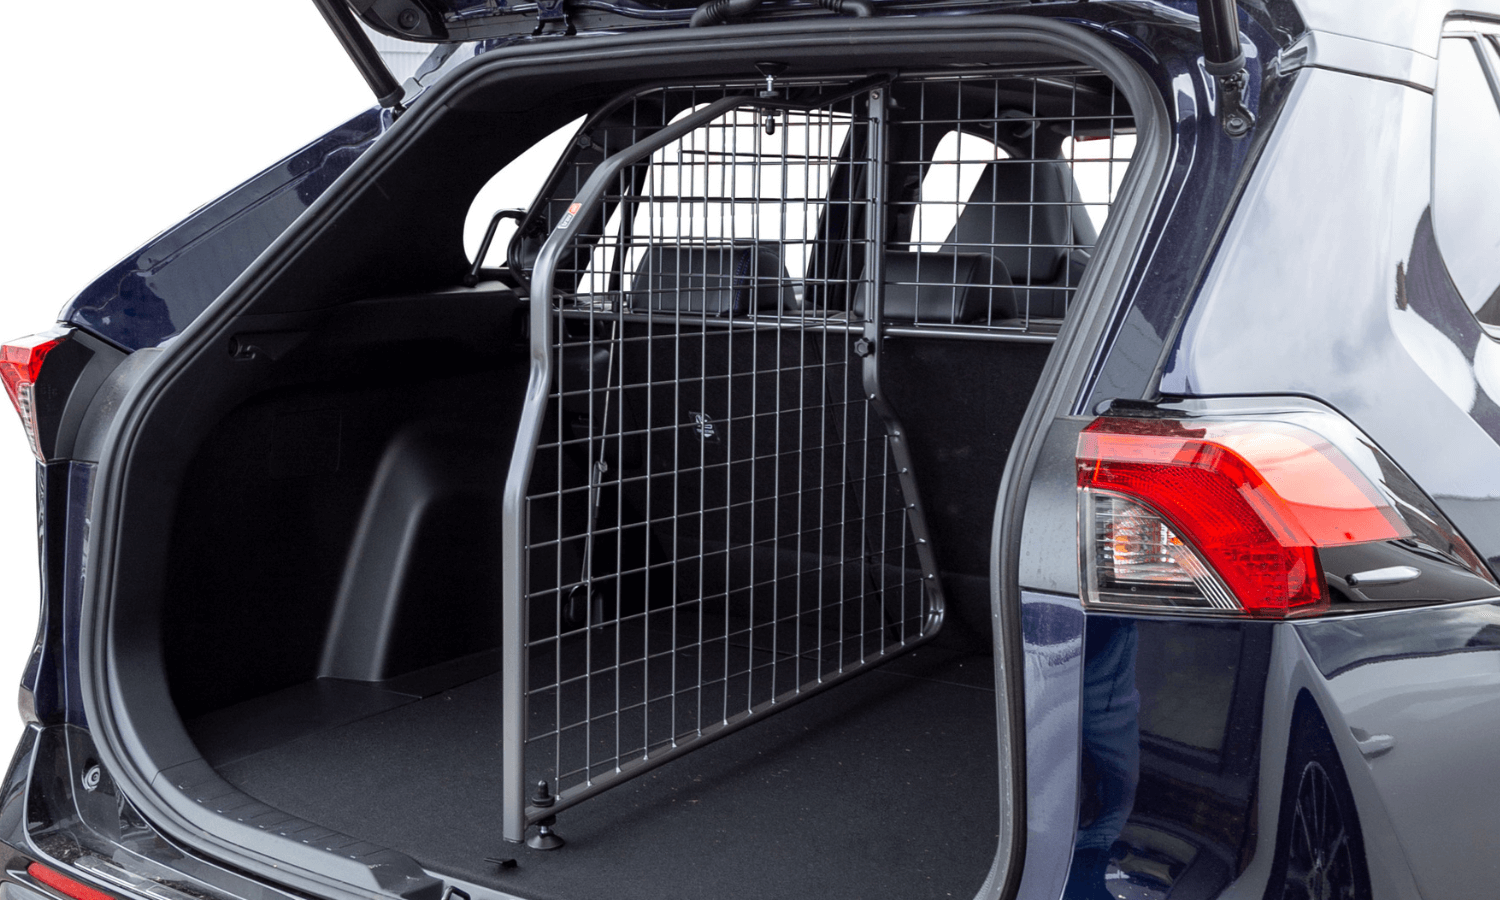 Auf dem Bild sind Hundegitter und Trenngitter für Toyota RAV4 zu sehen. Die Gitter sind im Kofferraum verbaut. © Travall